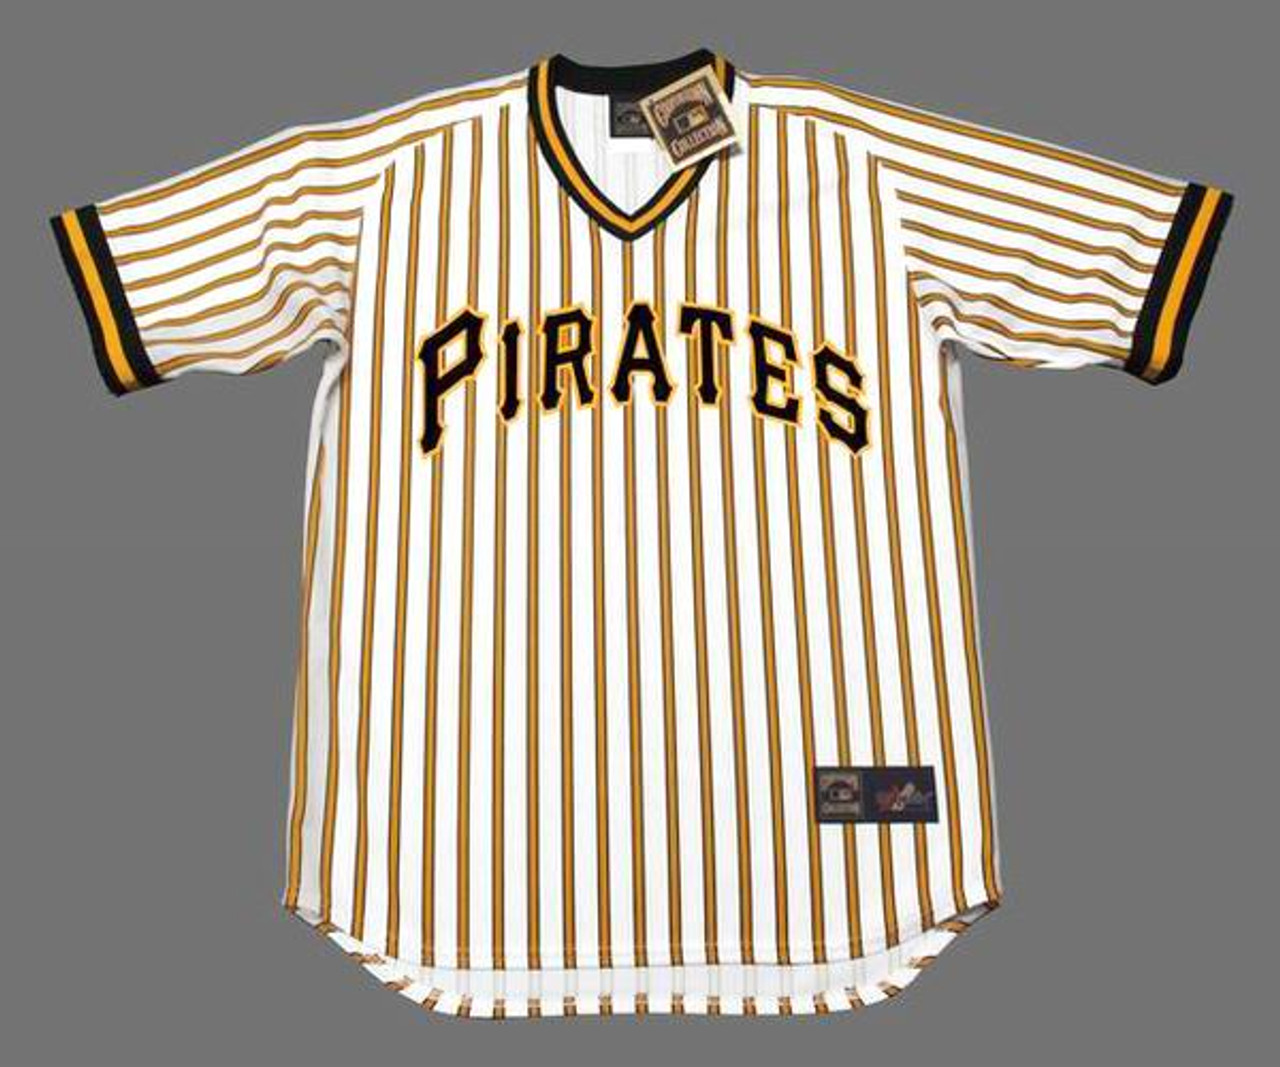 Dock Ellis Jersey - 1970's Pittsburgh Pirates Baseball Throwback Jersey